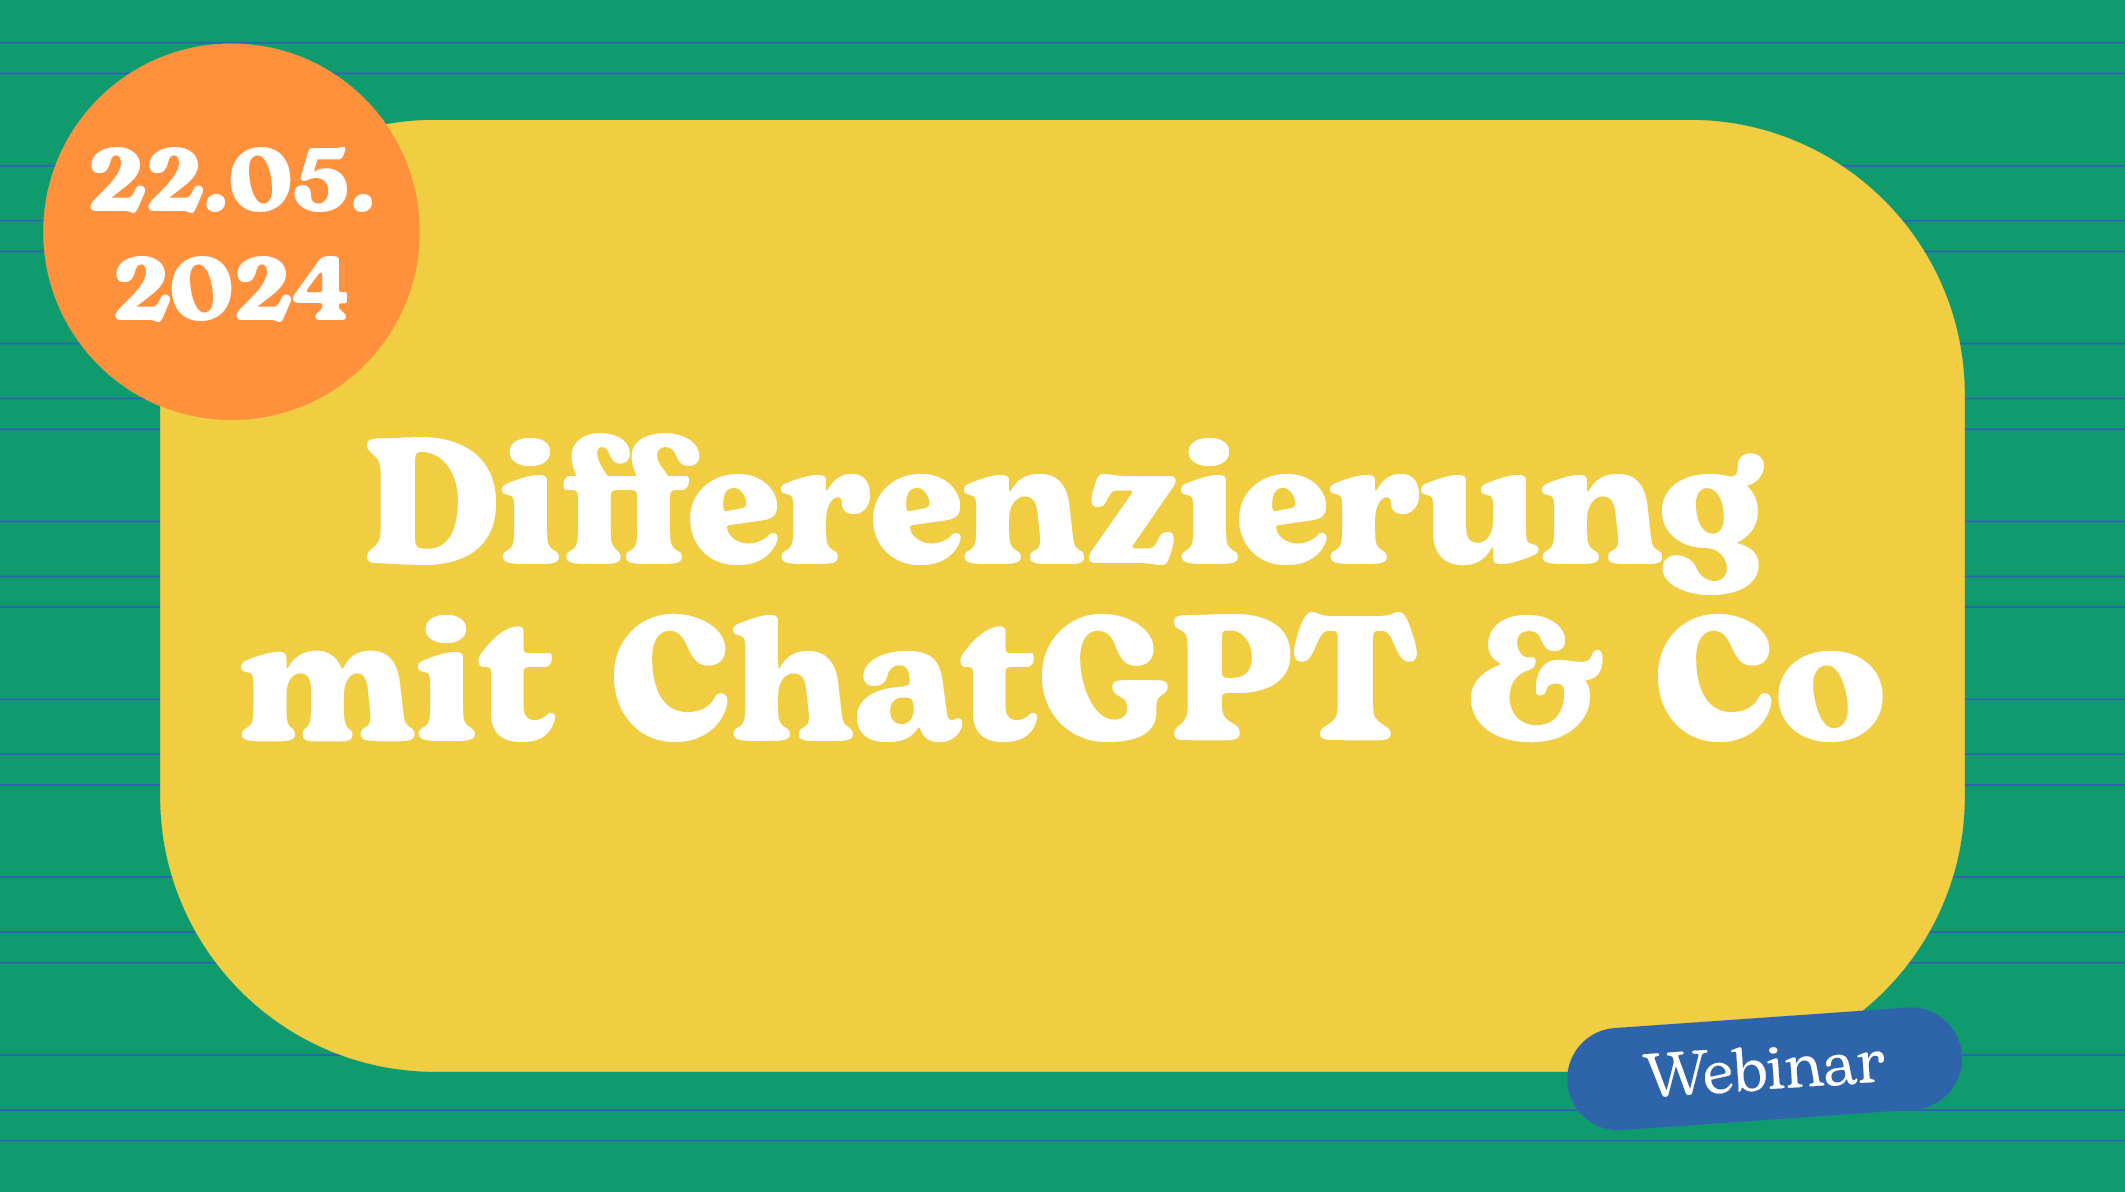 Webinarbild Differenzierung Chat GPT 22 05 24